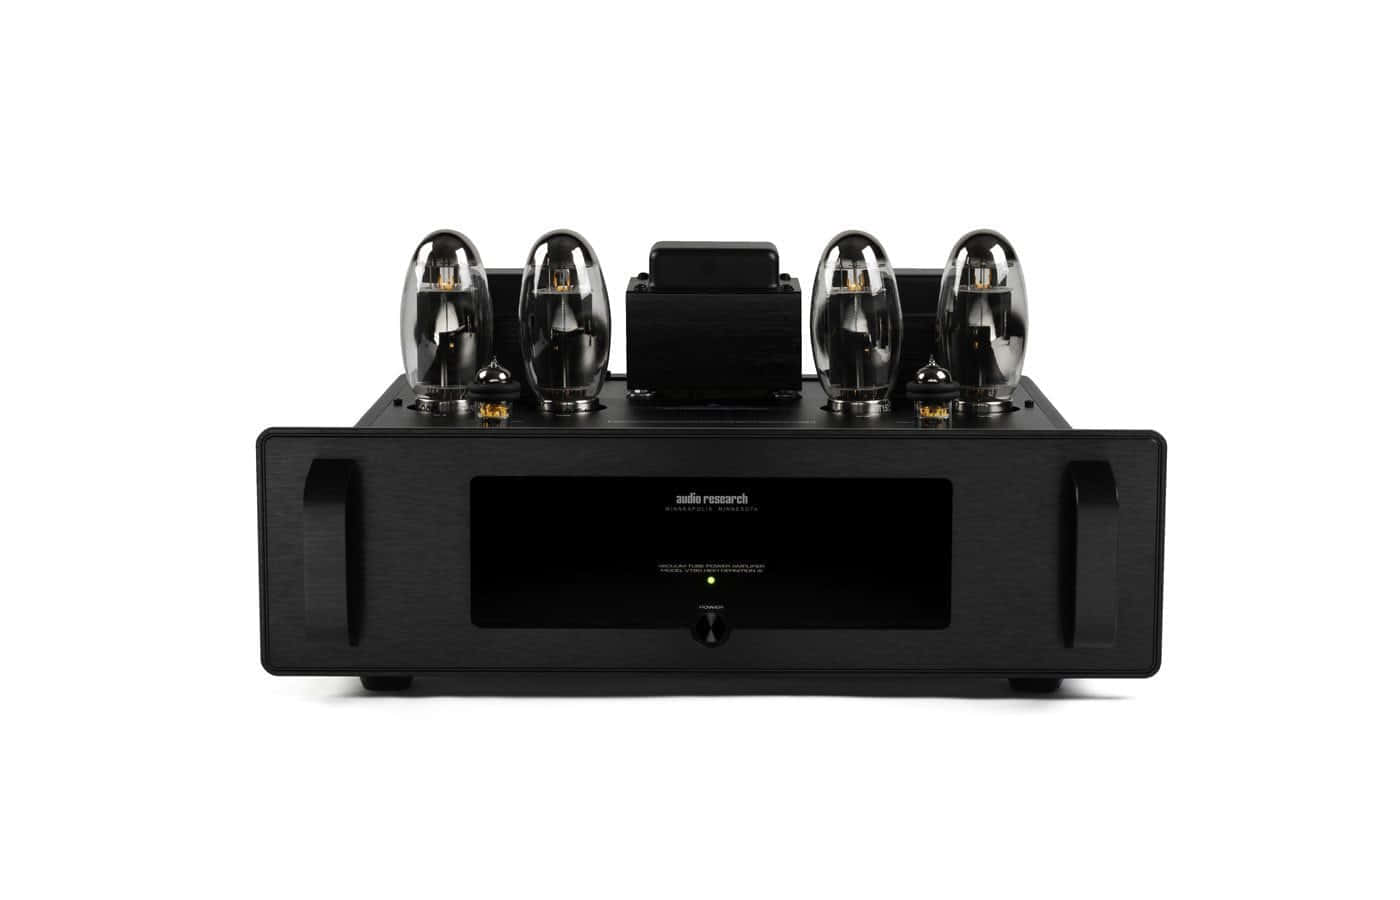 усилители мощности audio research vt80se silver Усилители мощности Audio Research VT80SE Black